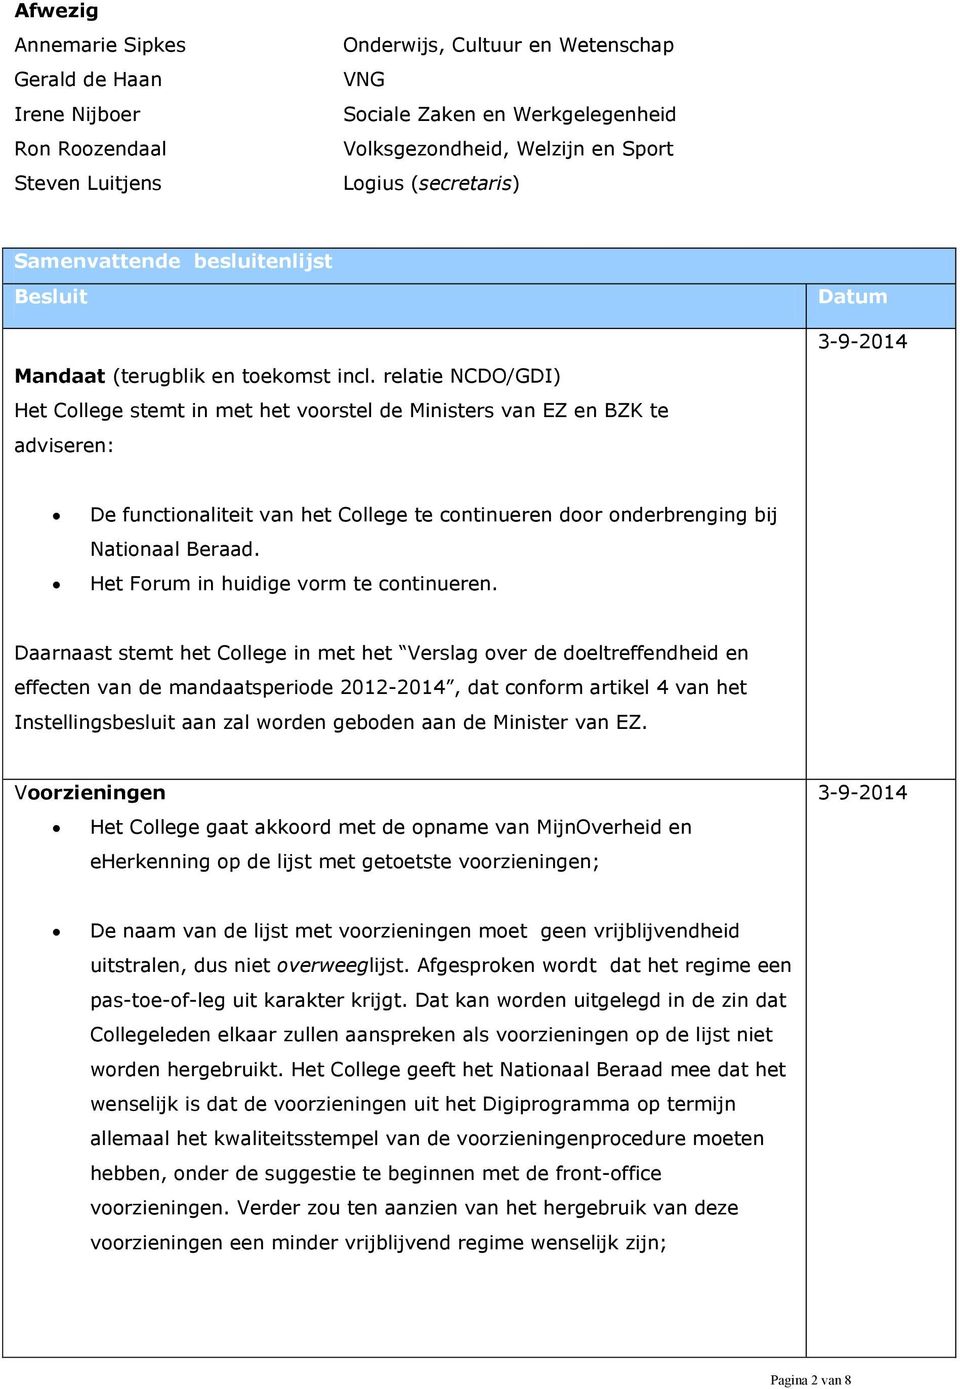 relatie NCDO/GDI) Het College stemt in met het voorstel de Ministers van EZ en BZK te adviseren: Datum 3-9-2014 De functionaliteit van het College te continueren door onderbrenging bij Nationaal